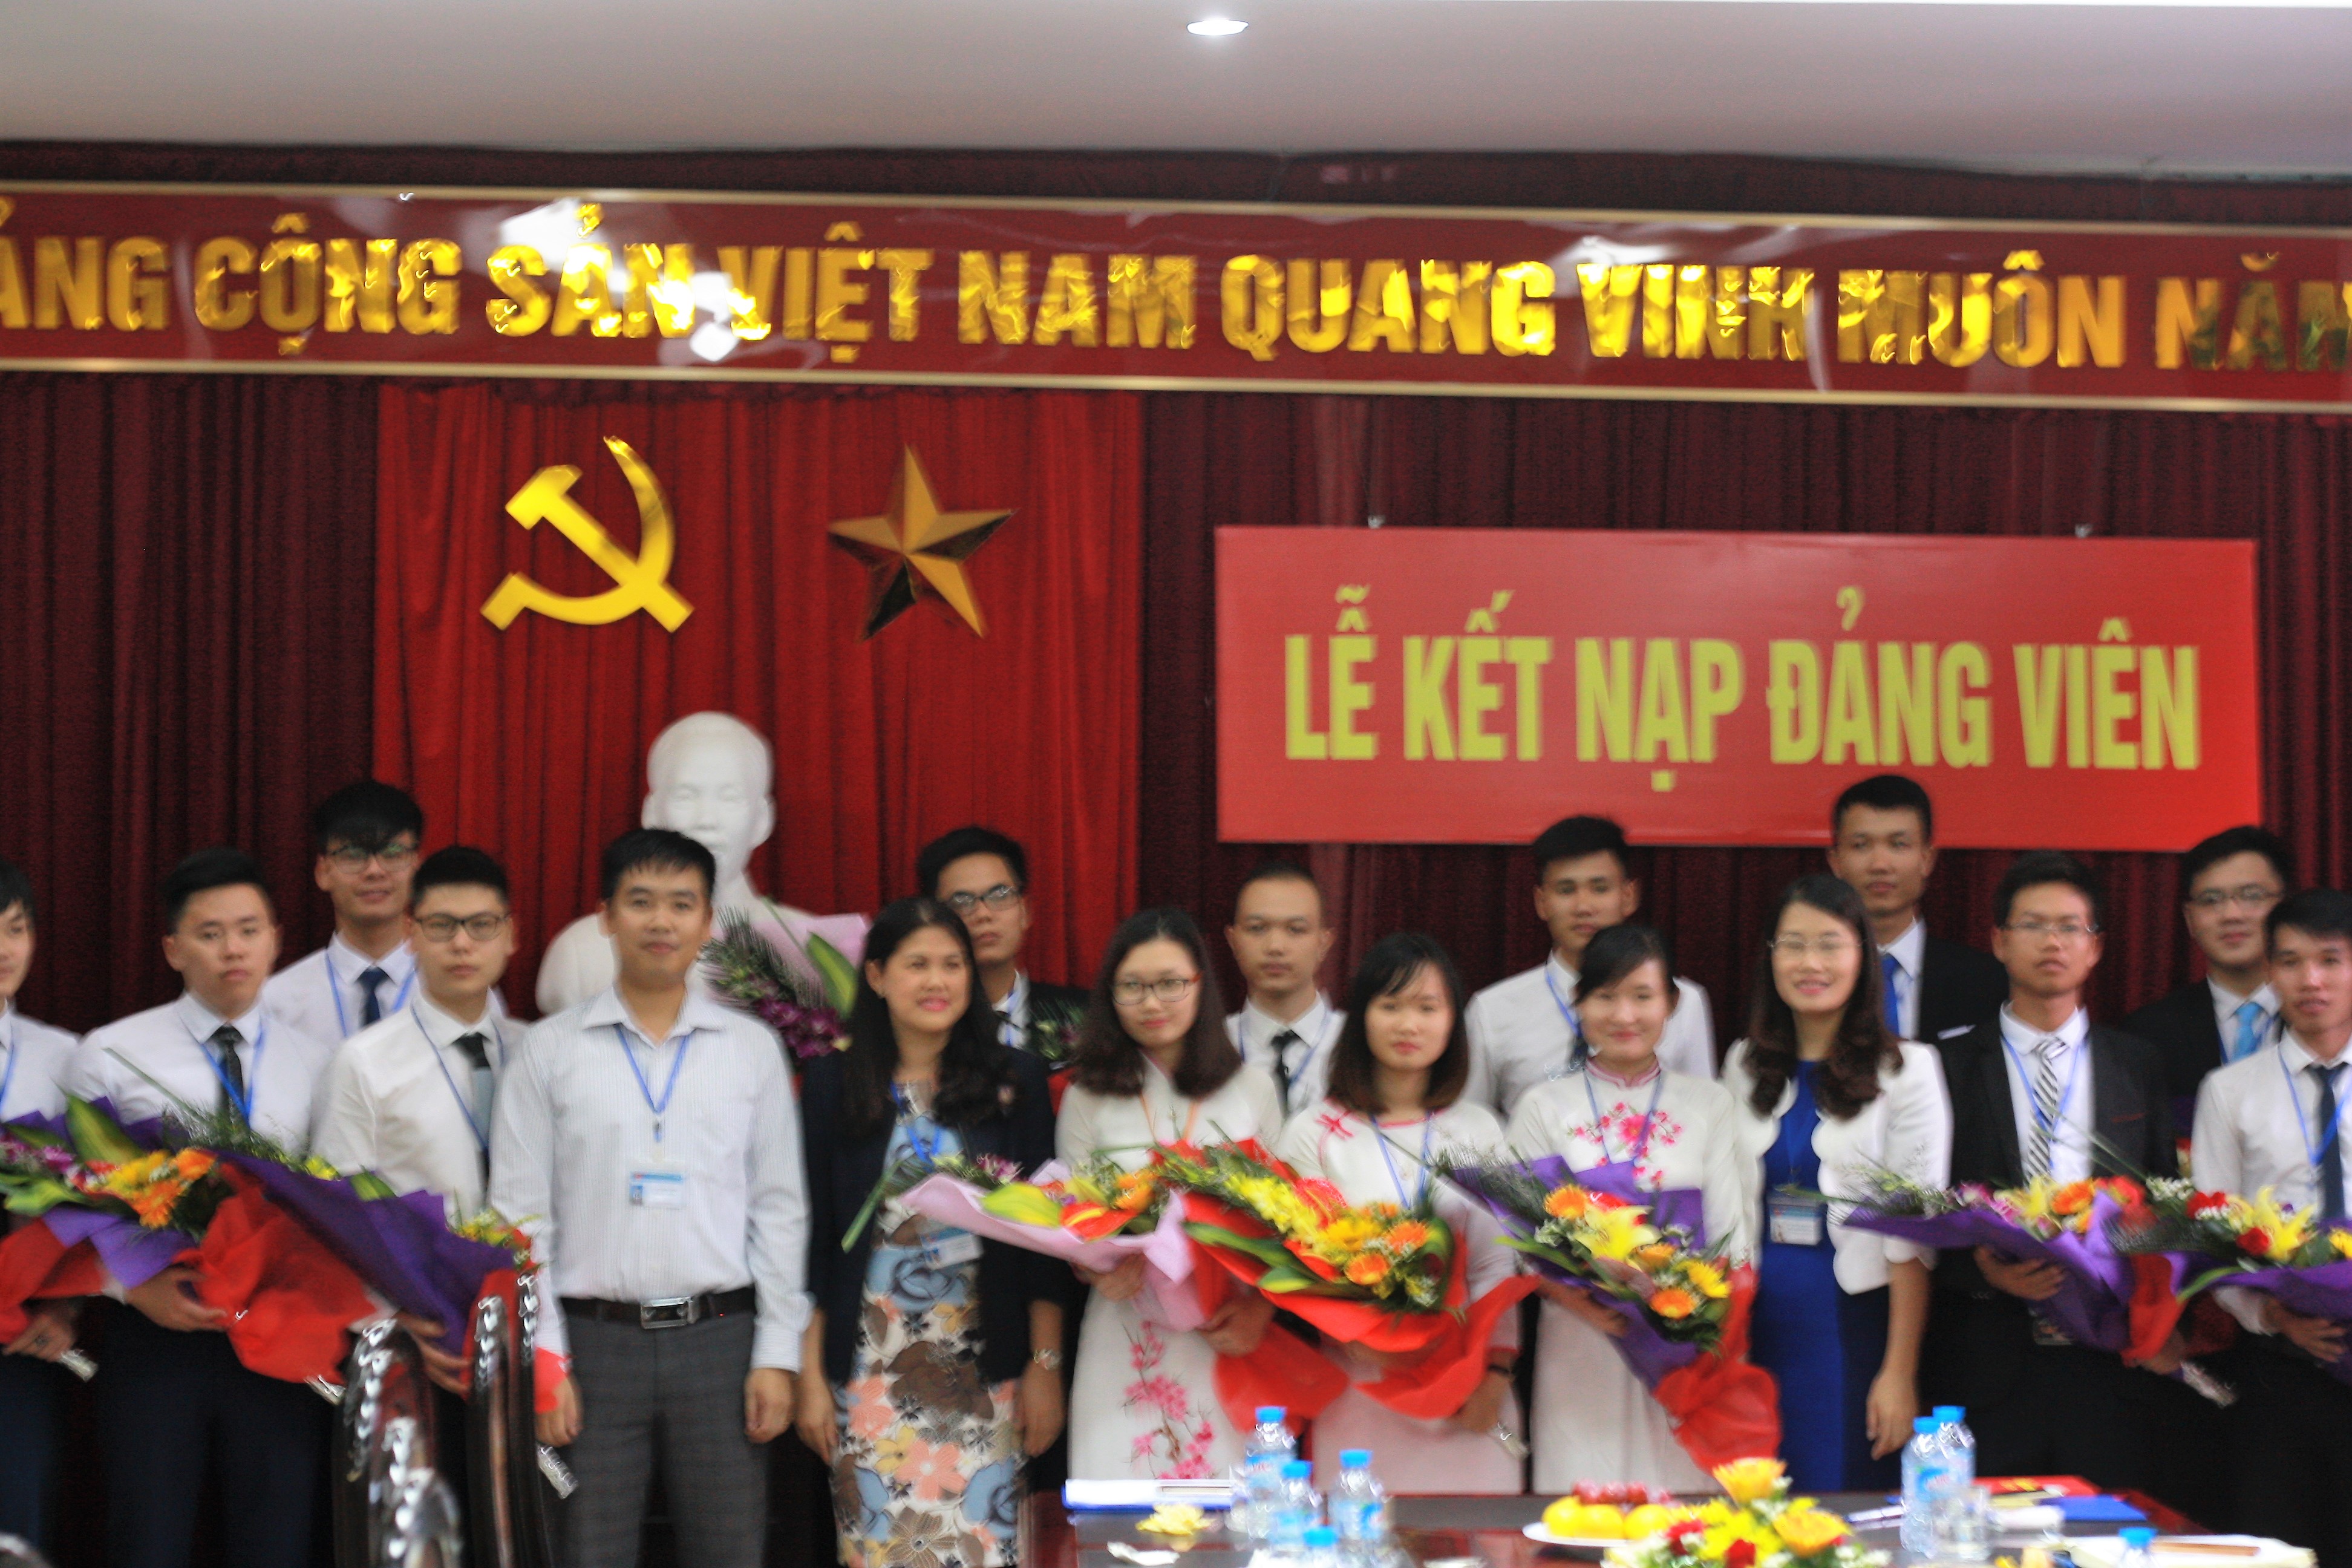 Lễ kết nạp Đảng viên chào mừng 127 năm Ngày sinh Chủ tịch Hồ Chí Minh (19/5/1890-19/5/2017)